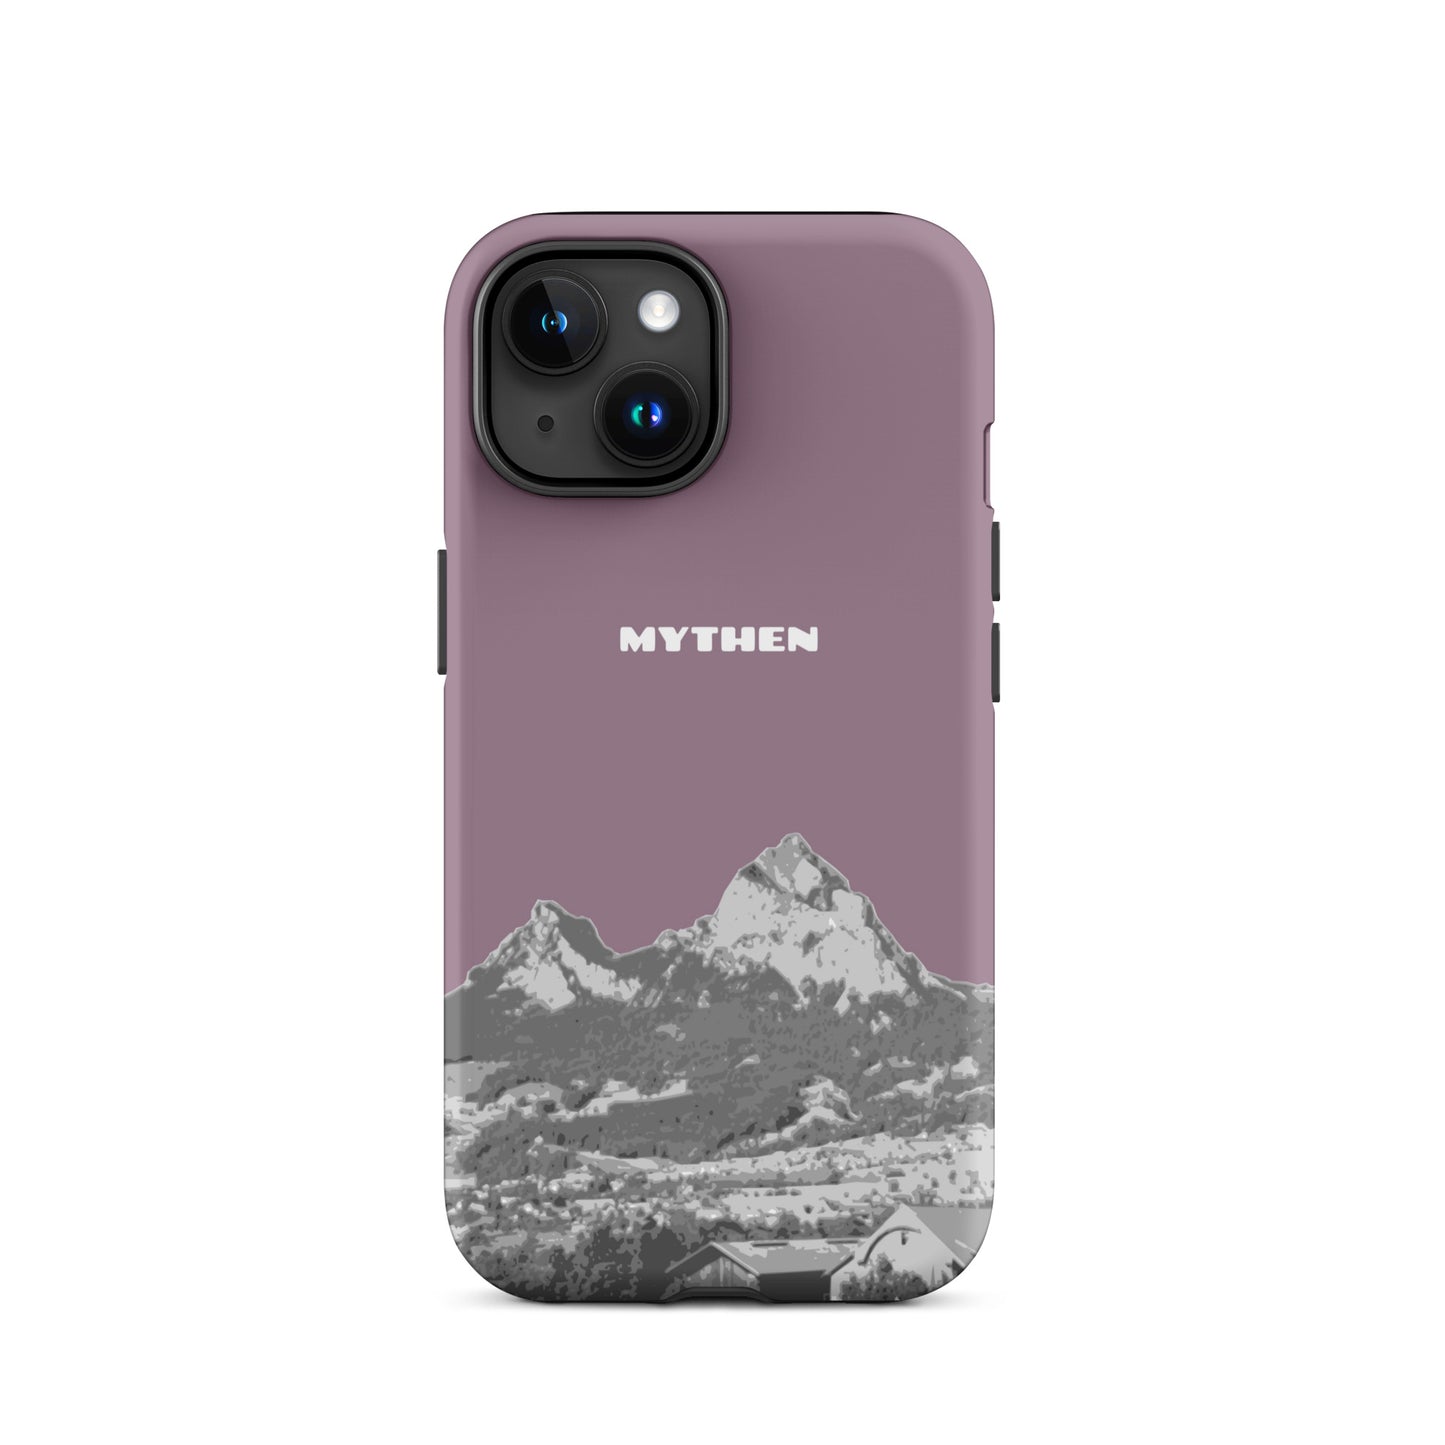 Hülle für das iPhone 15 von Apple in der Farbe Pastellviolett, die den Grossen Mythen und den Kleinen Mythen bei Schwyz zeigt. 